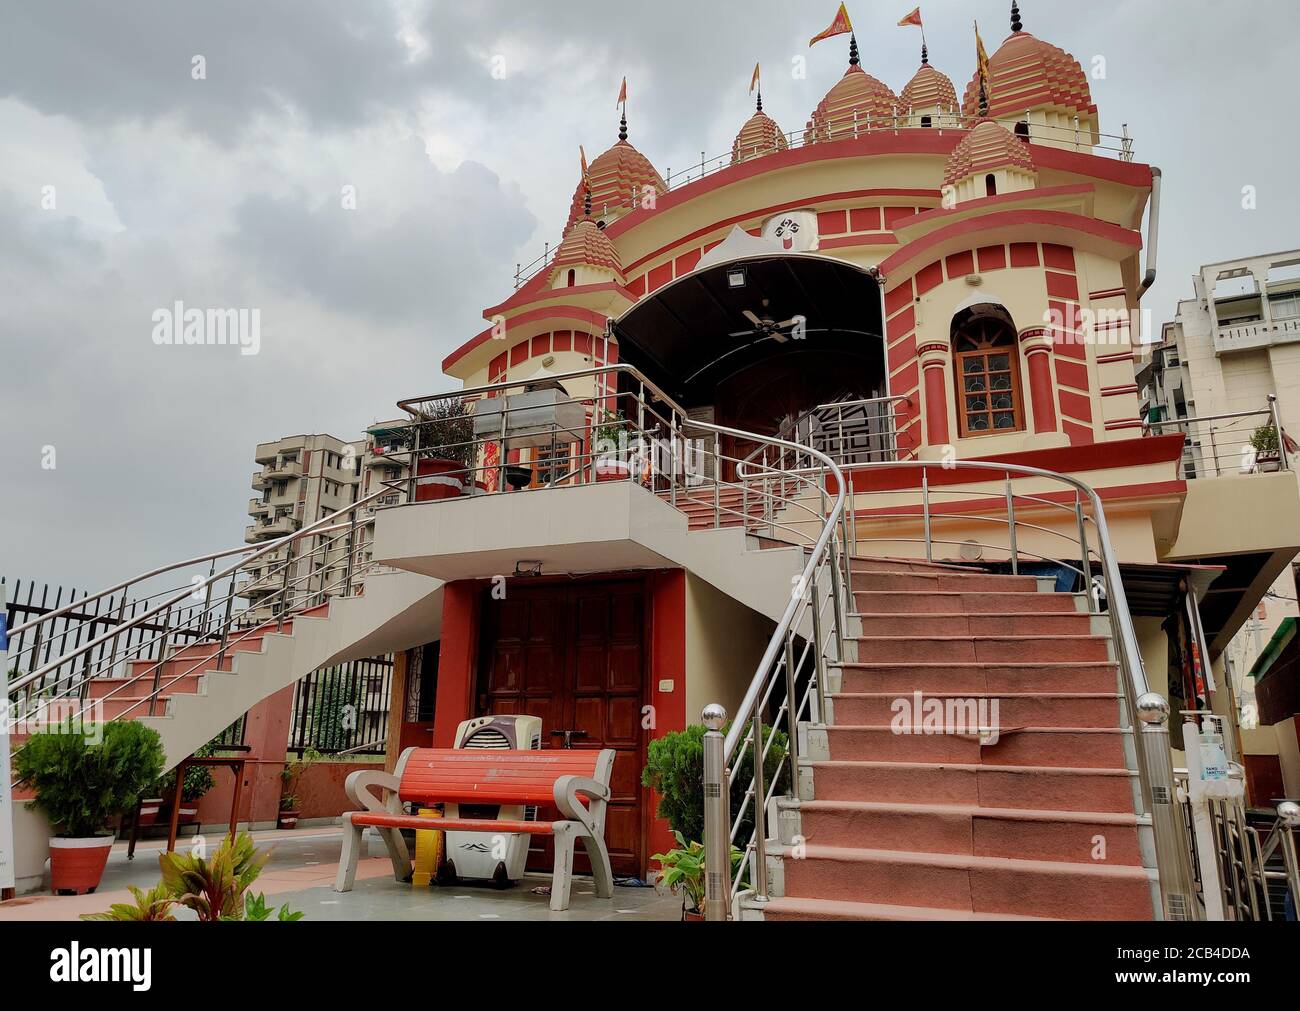 Kali Bari tempio a Dwarka, Nuova Delhi, India progettato come Dakshineshwar Kali tempio di Kolkata, Bengala Occidentale Foto Stock